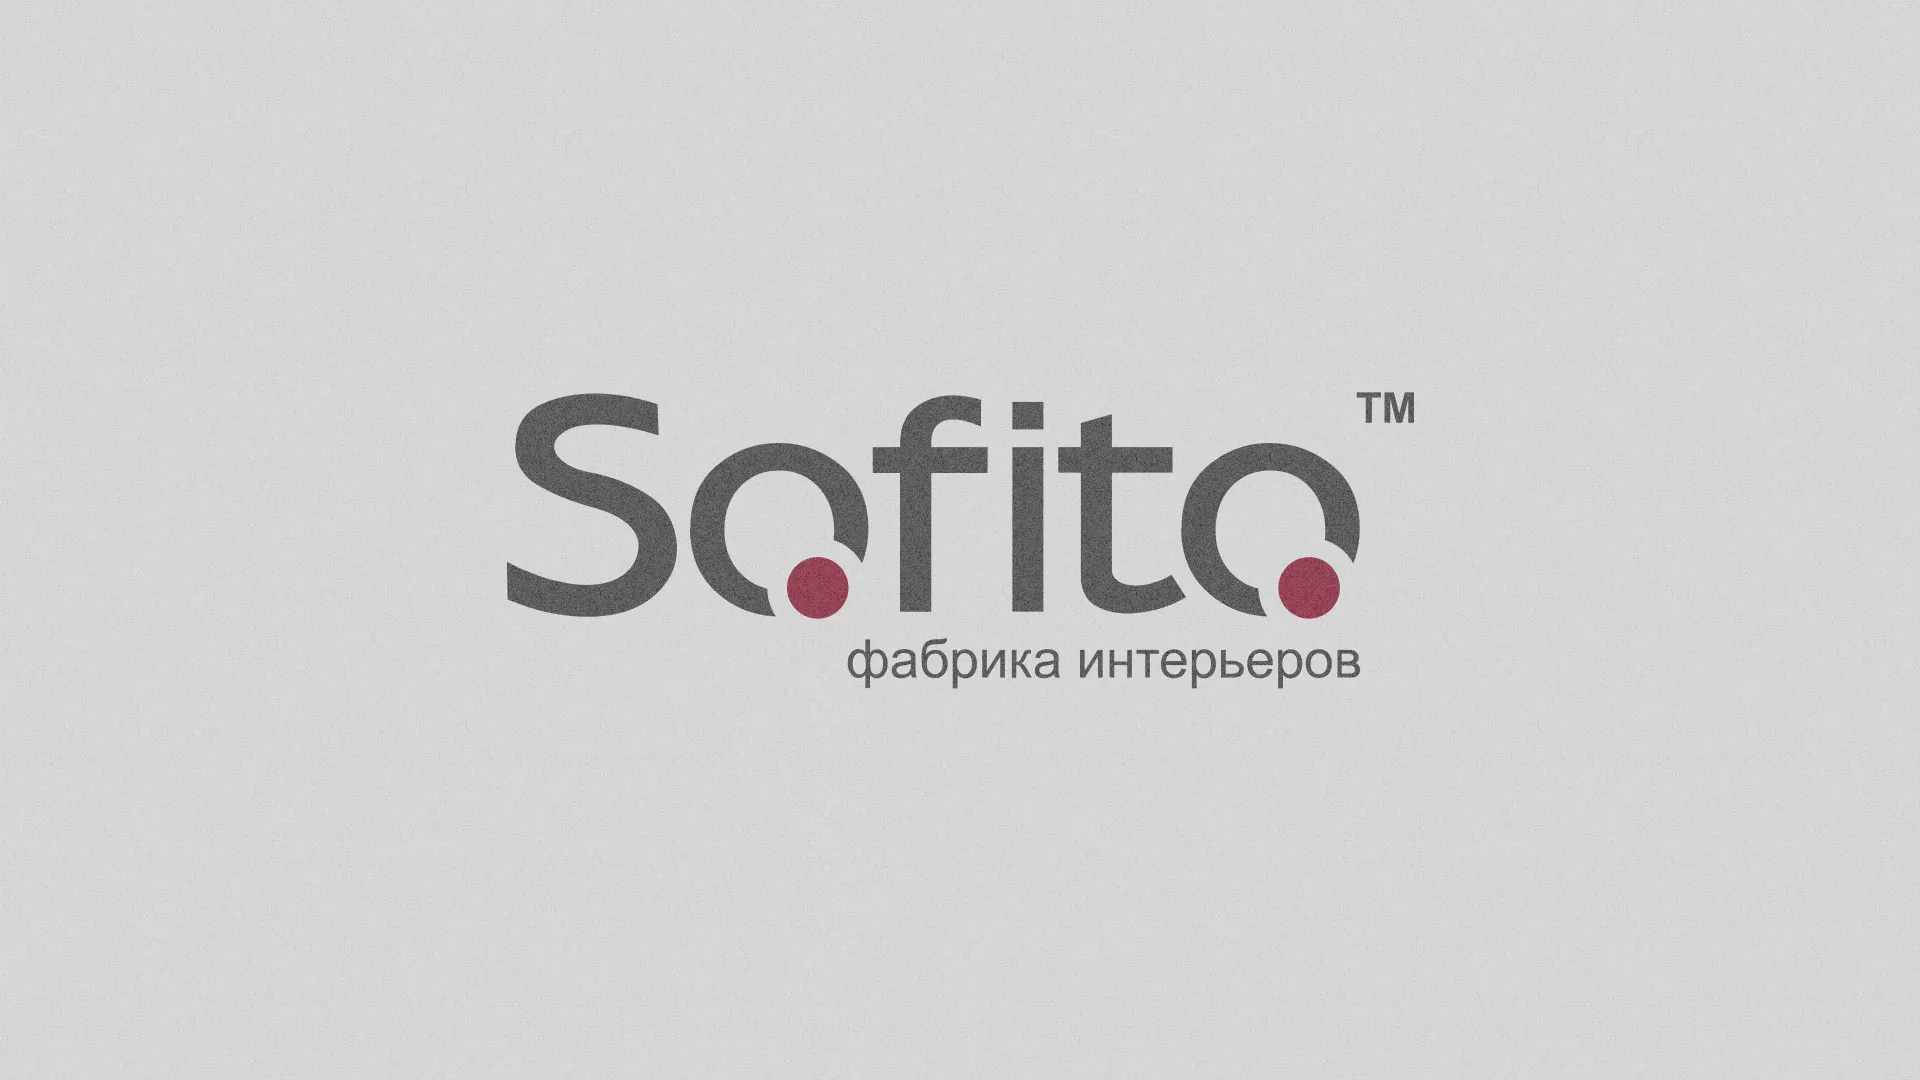 Создание сайта по натяжным потолкам для компании «Софито» в Трёхгорном